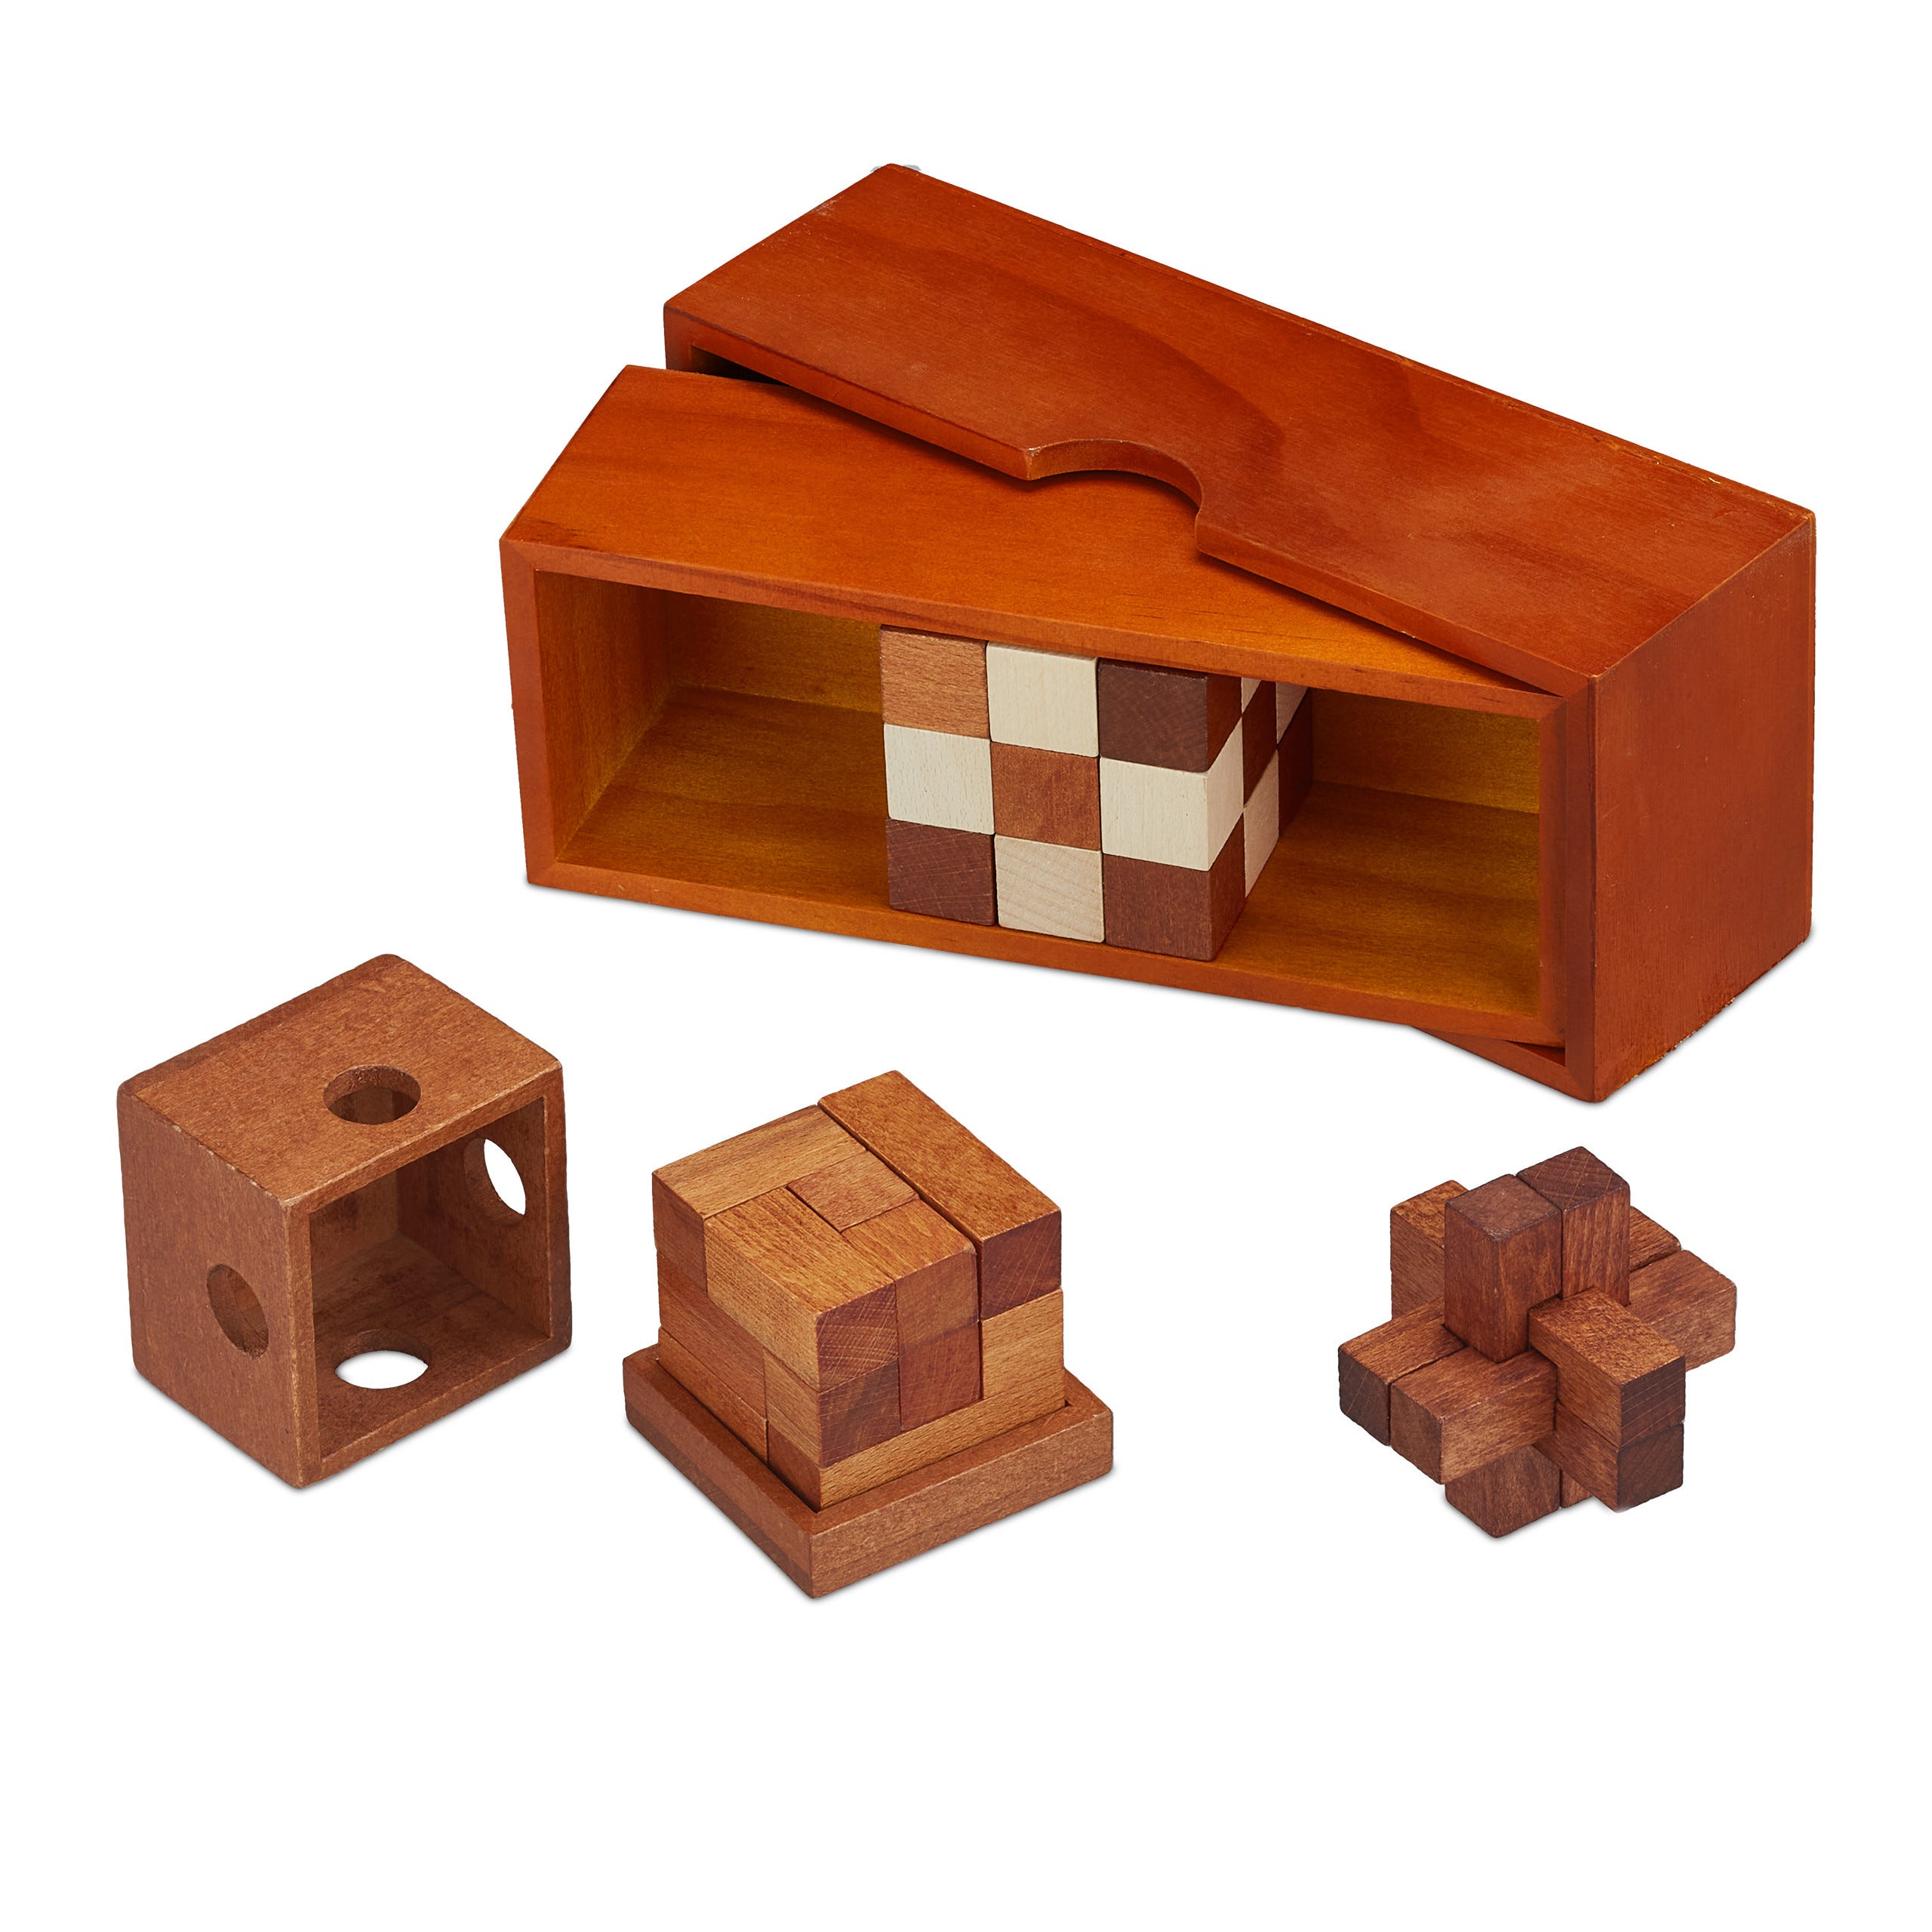 Relaxdays Jeu de casse-tête, en bois, 3 puzzles, avec boîte, stimule la  pensée logique, pour adultes & enfants, marron